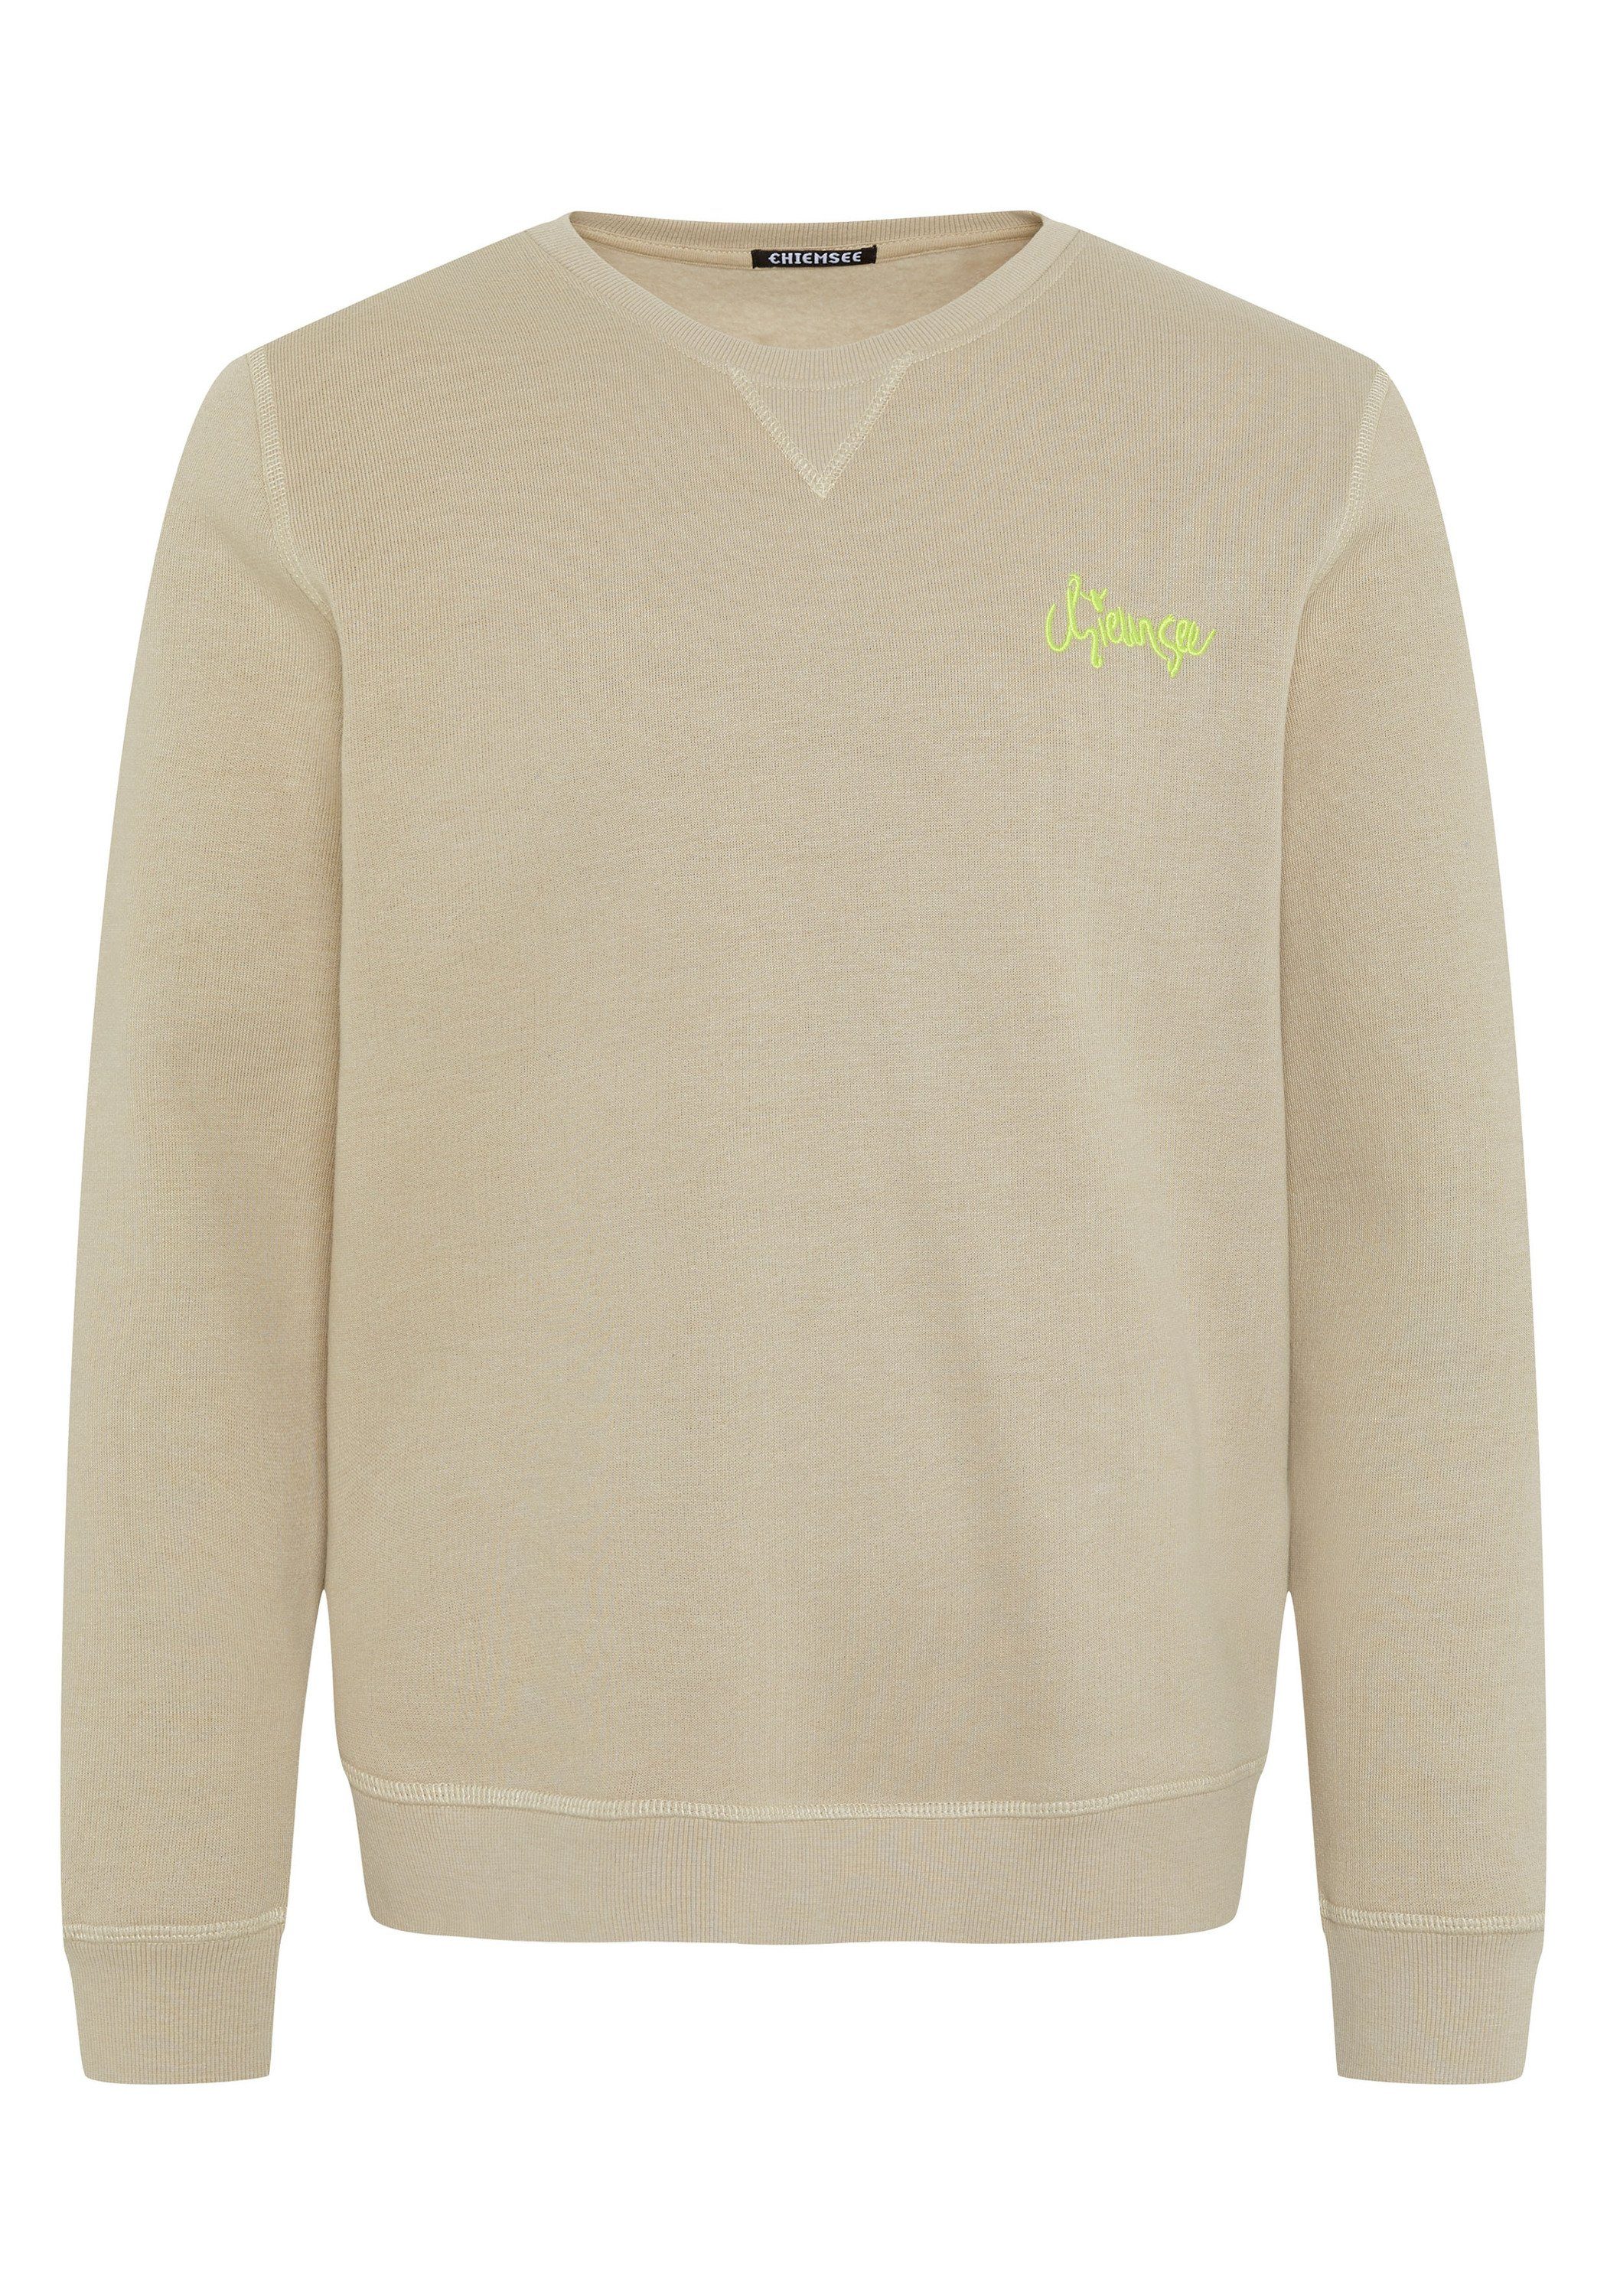 Chiemsee Sweatshirt Sweatshirt aus Baumwollmix mit Logo-Print 1 15-1306 Oxford Tan